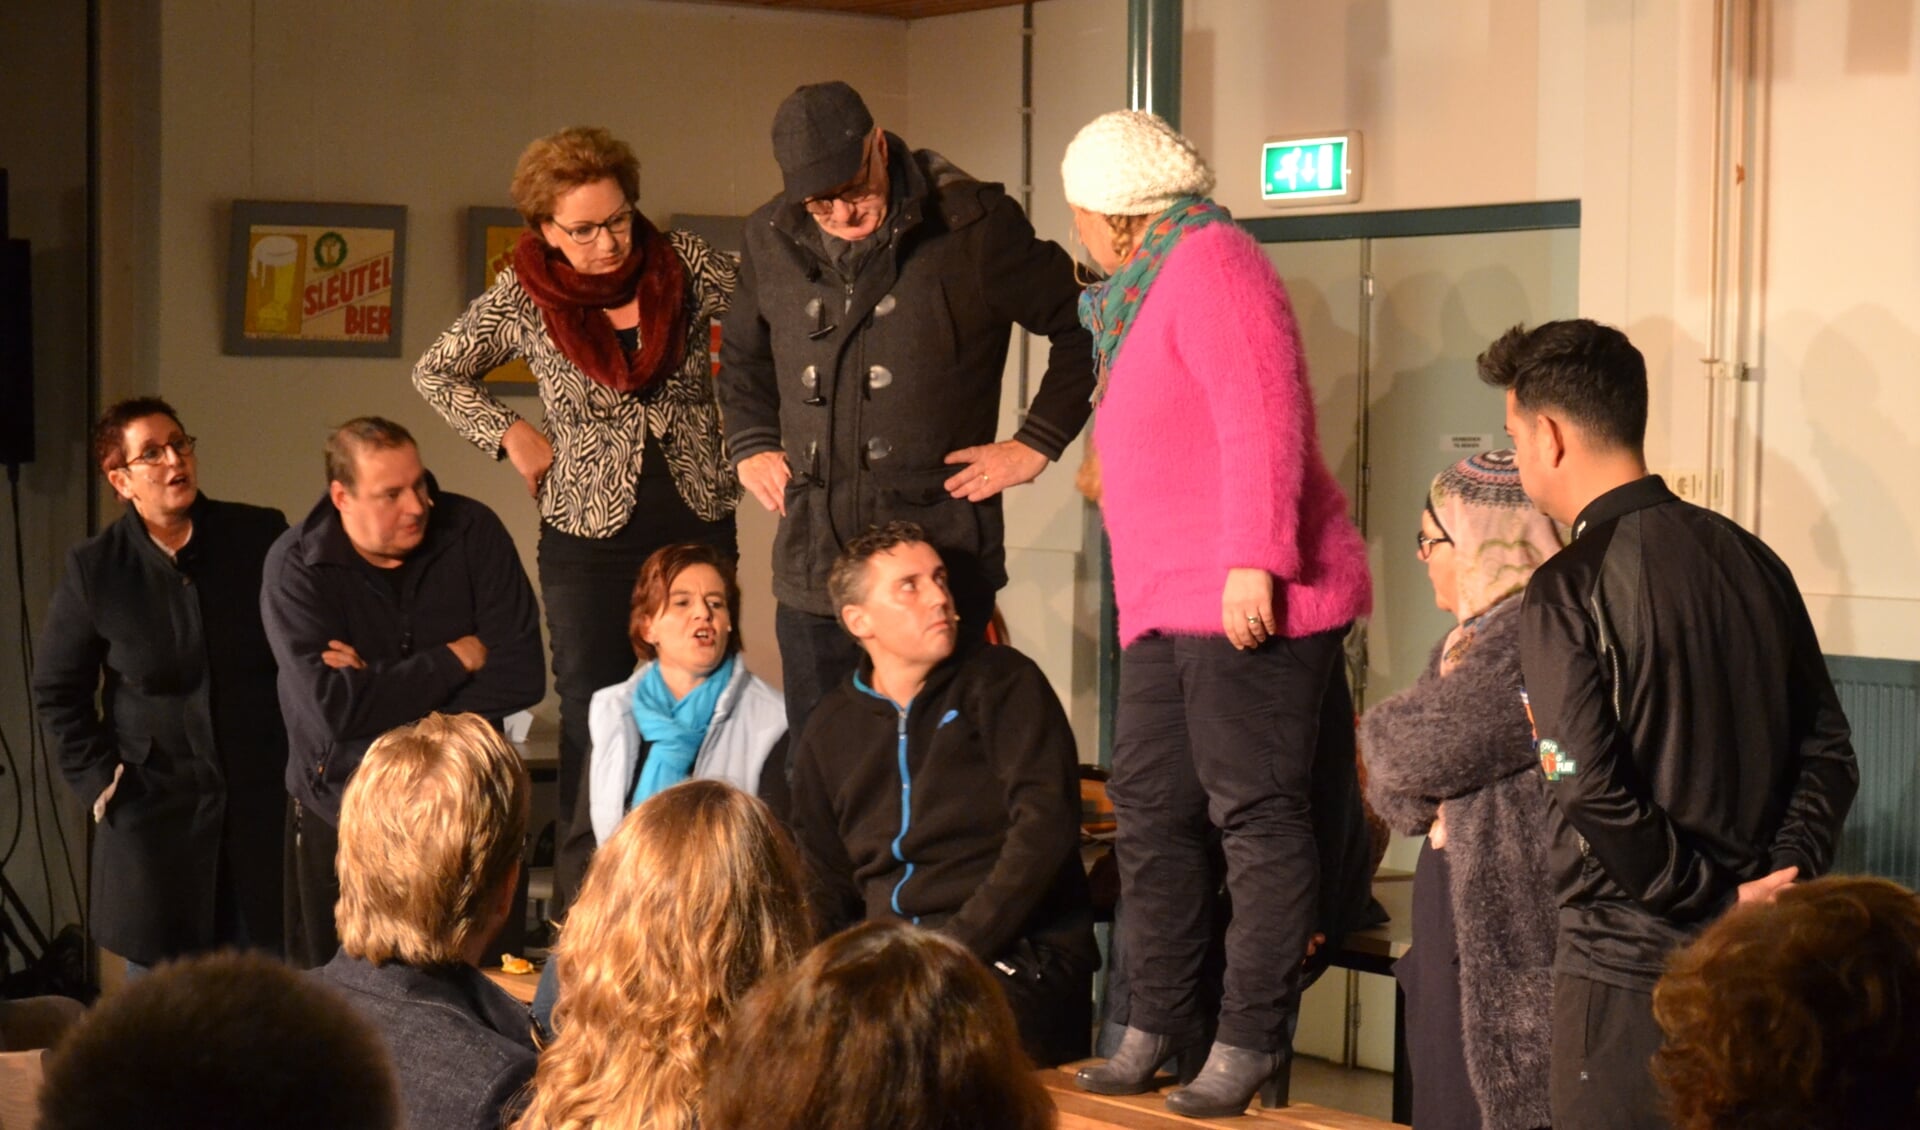 Totaaltheatergroep Cameleon presenteert de voorstelling 'Leeve de Vereeniging'